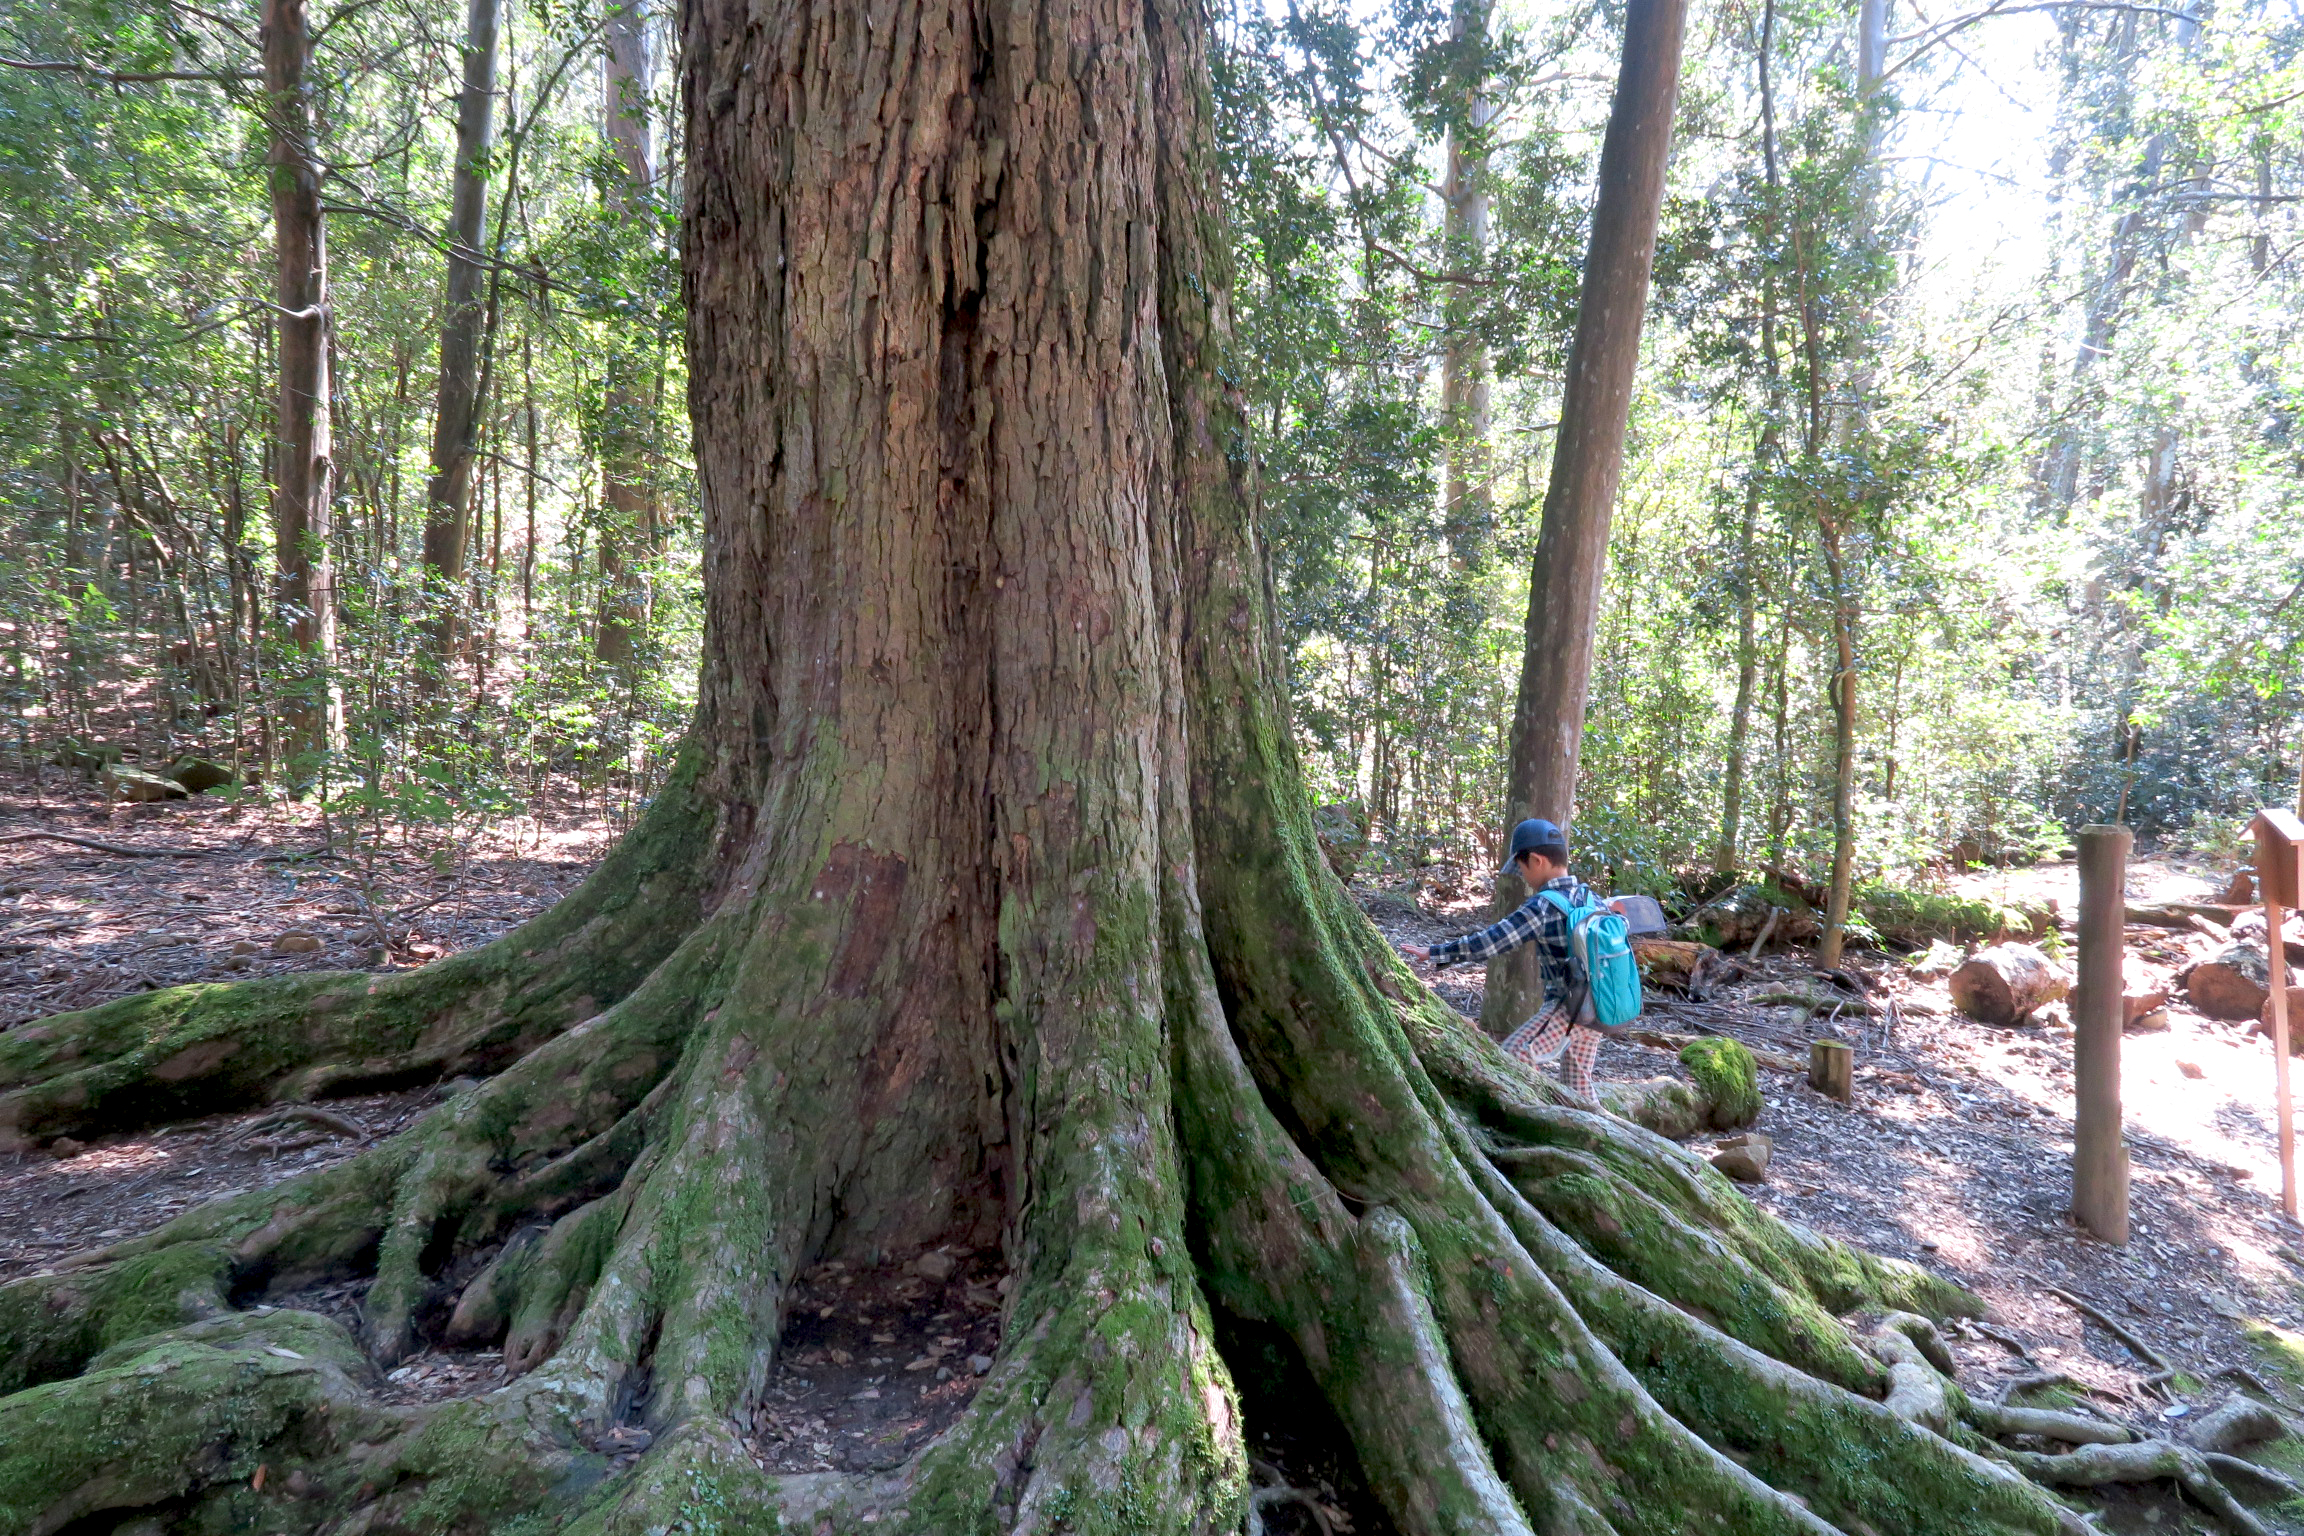 境内には幹周り3mを越えるイチイガシの巨樹が多く生育しています。